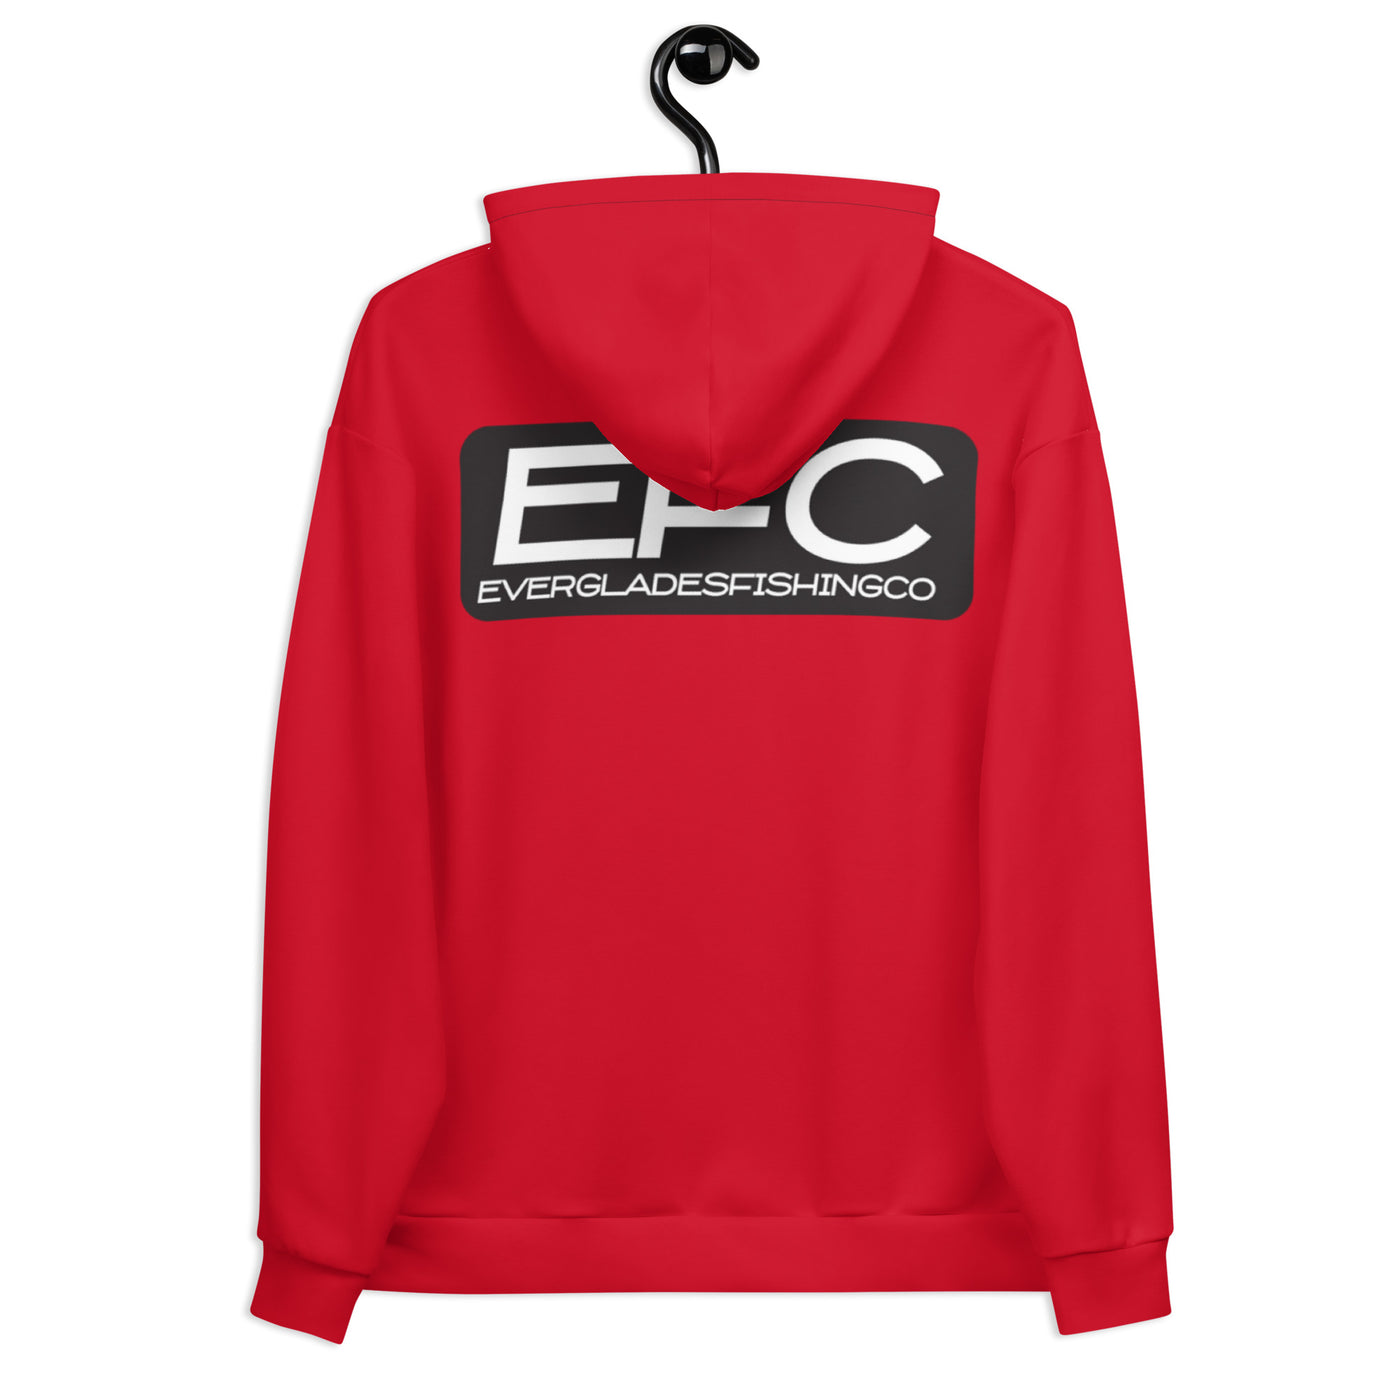 EFC Red Hoodie